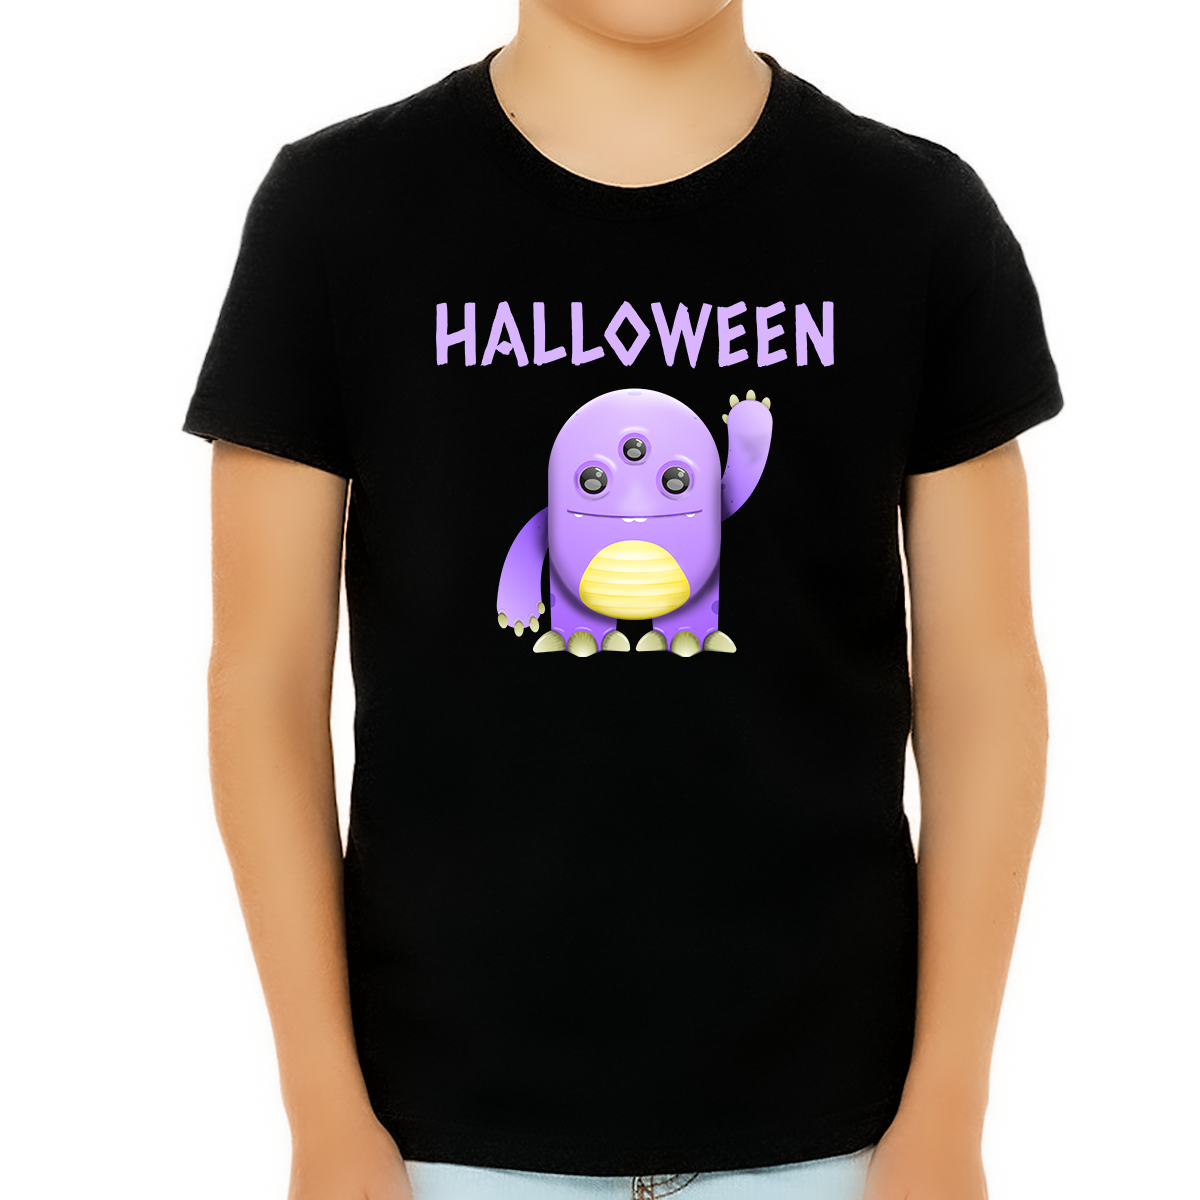 Cute Purple Monster Shirt Halloween Shirts for Boys Cute Boys Halloween Shirt Halloween Shirts for Kids